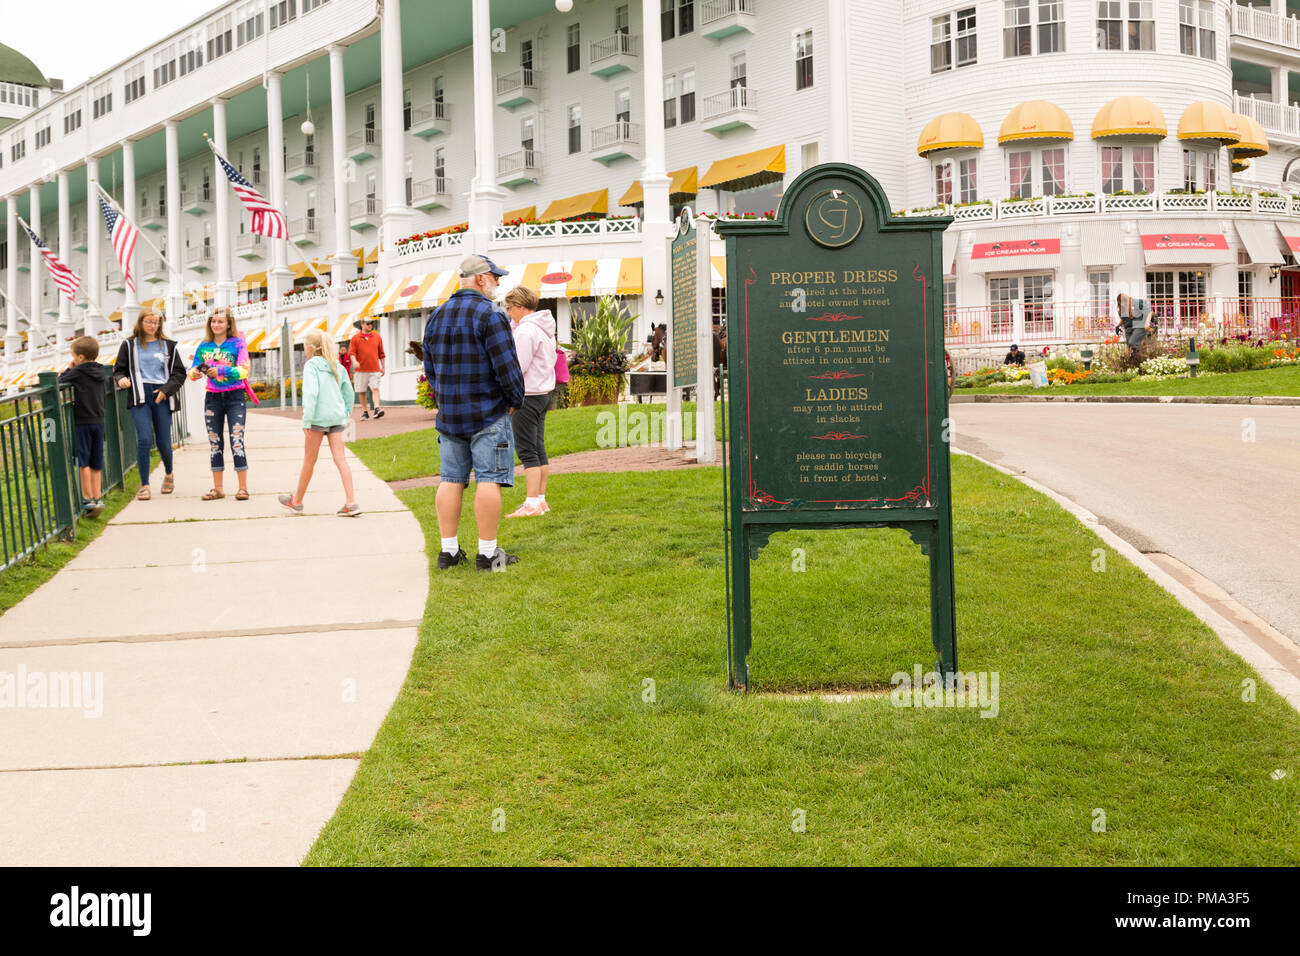 Signe extérieur avec tenue correcte des règles de code, en face de l'hôtel Grand Resort sur l'île Mackinac, Michigan. Les touristes sont habillés de façon décontractée. Banque D'Images